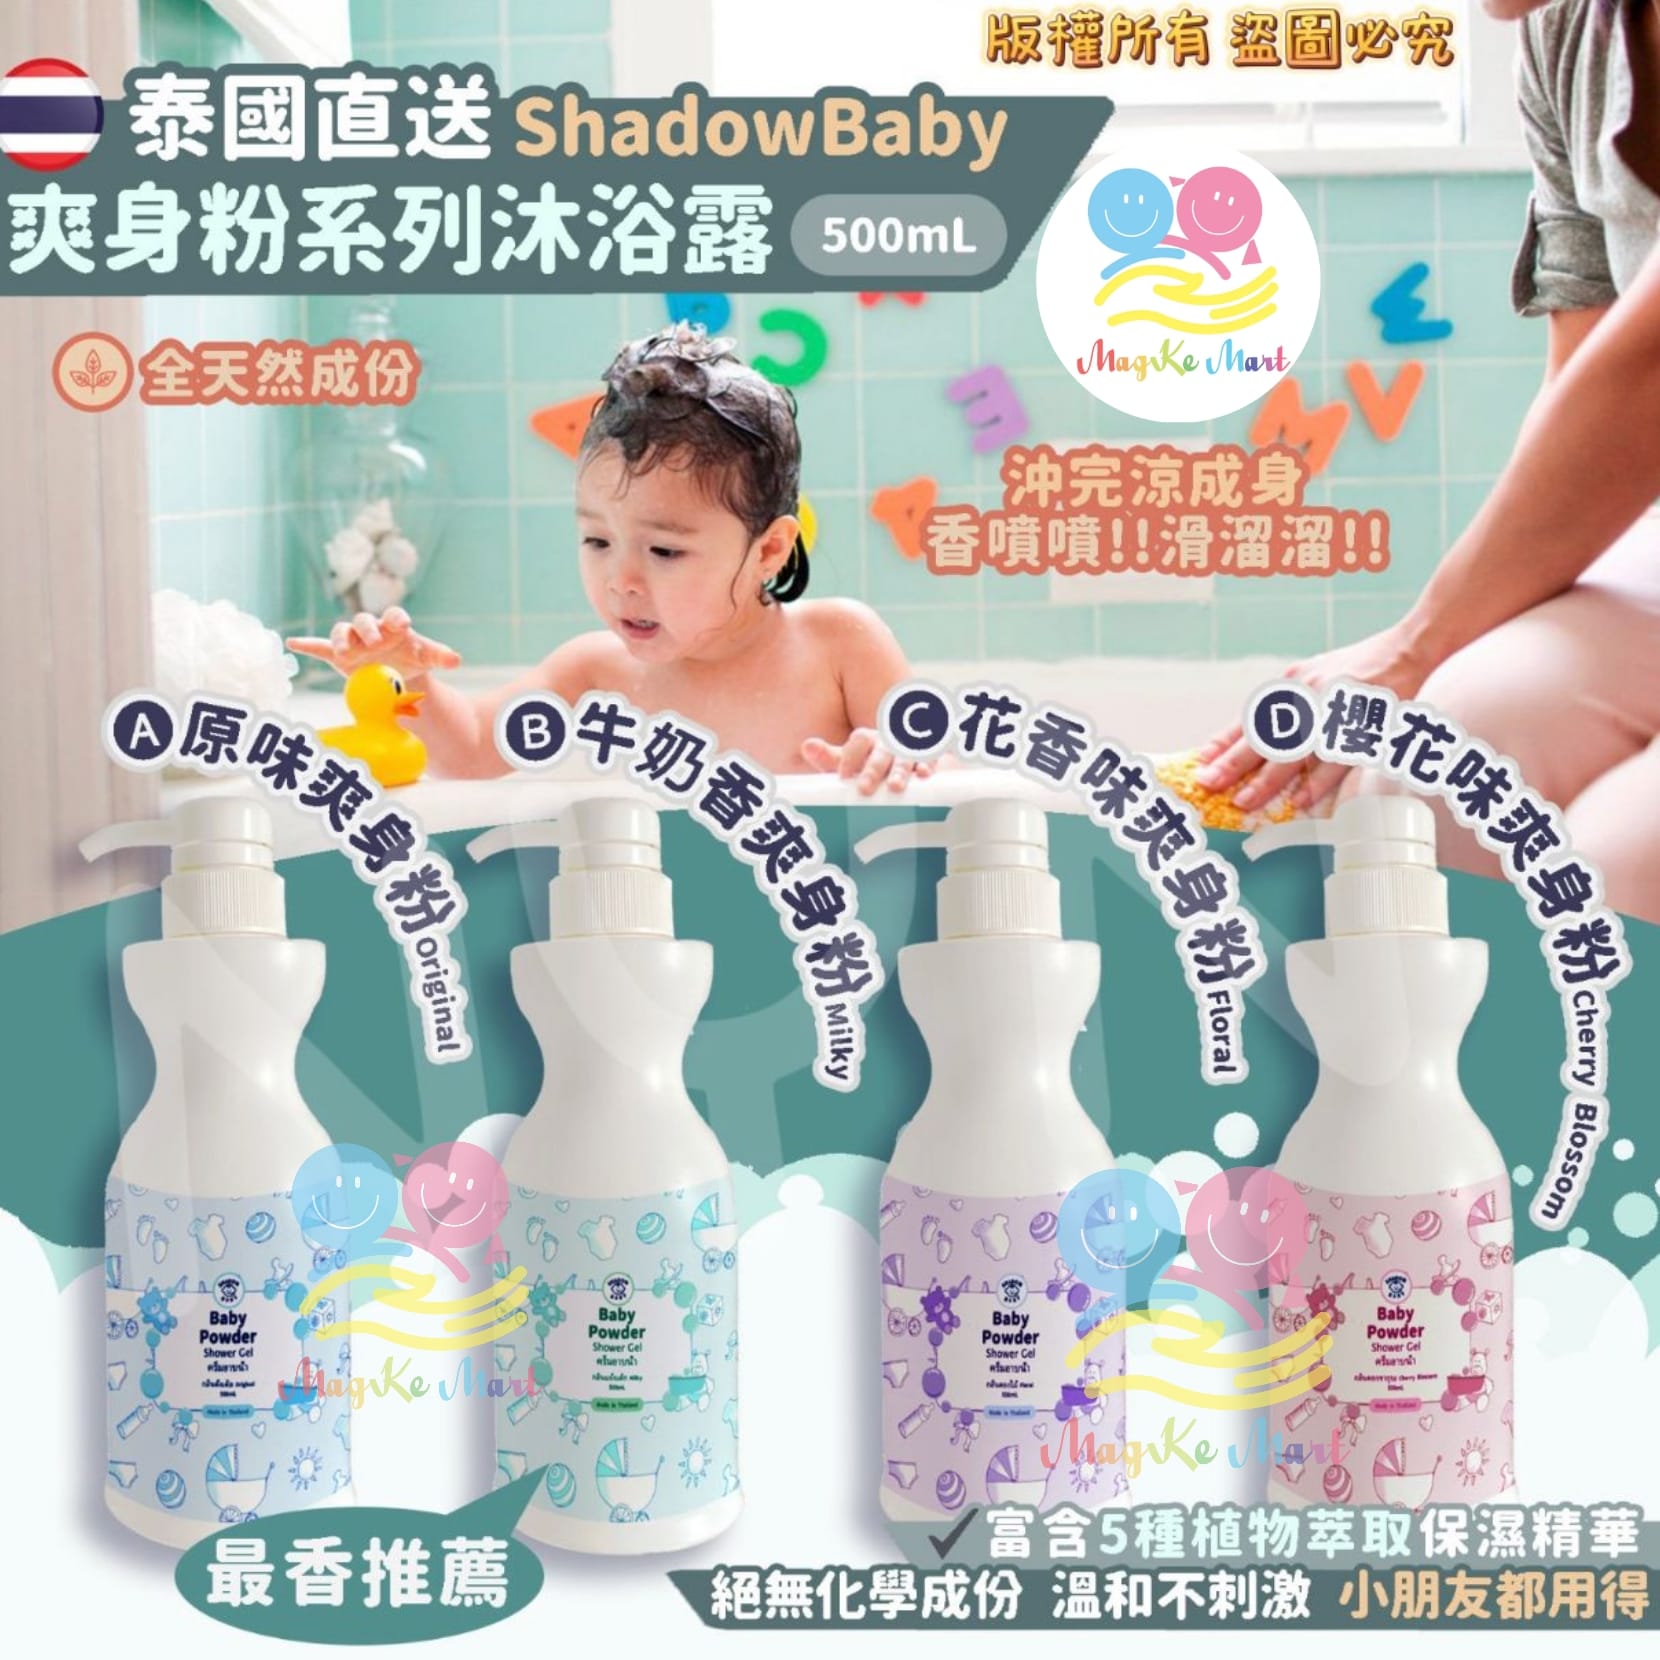 泰國 Shadow Baby 爽身粉系列保濕沐浴露 500ml (C) 花香味爽身粉